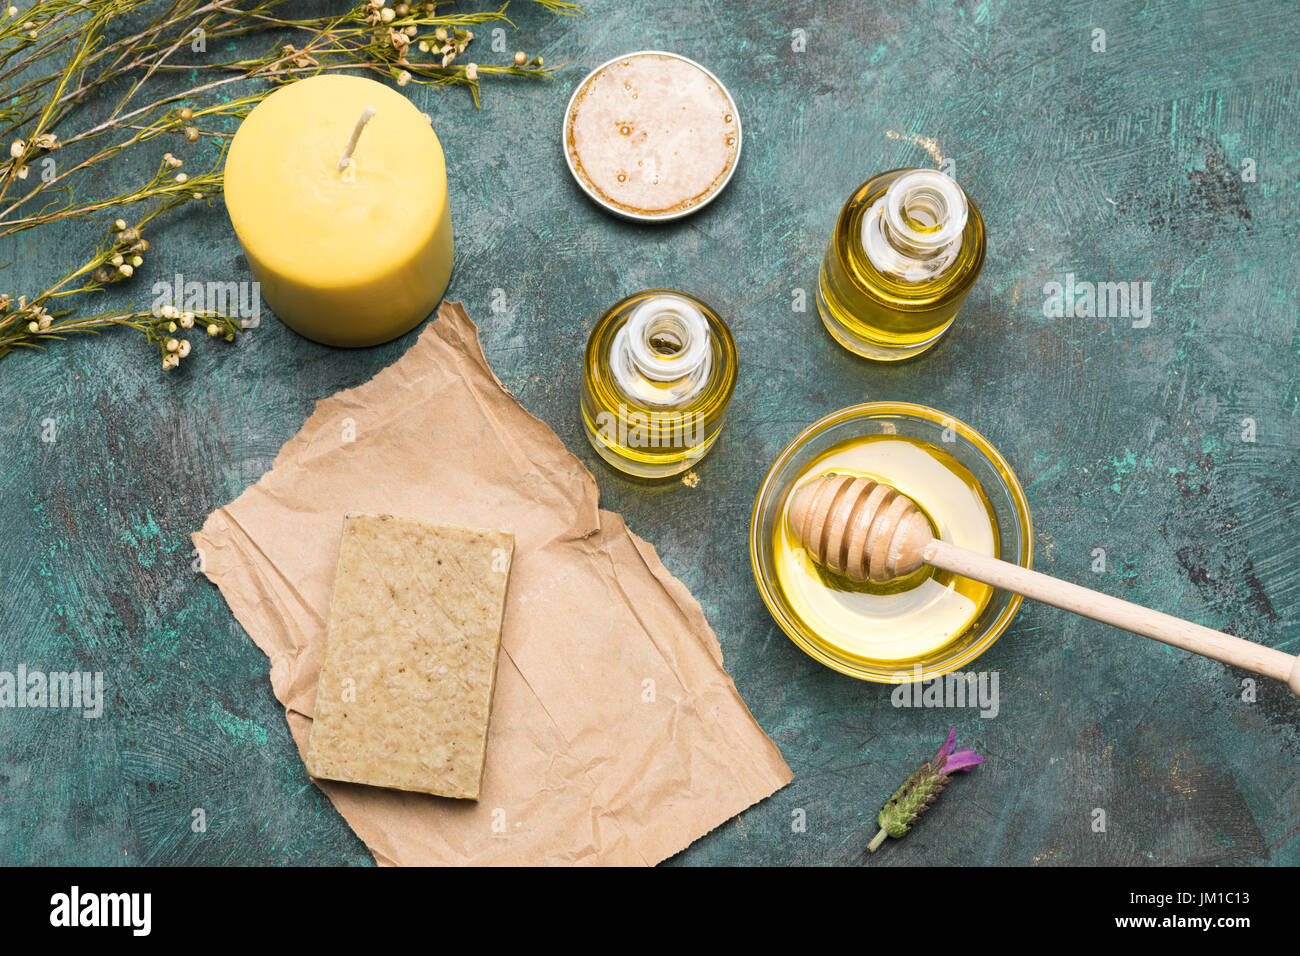 Vue de dessus du savon fait maison, bougie, huile essentielle et de miel pour les soins de beauté Banque D'Images